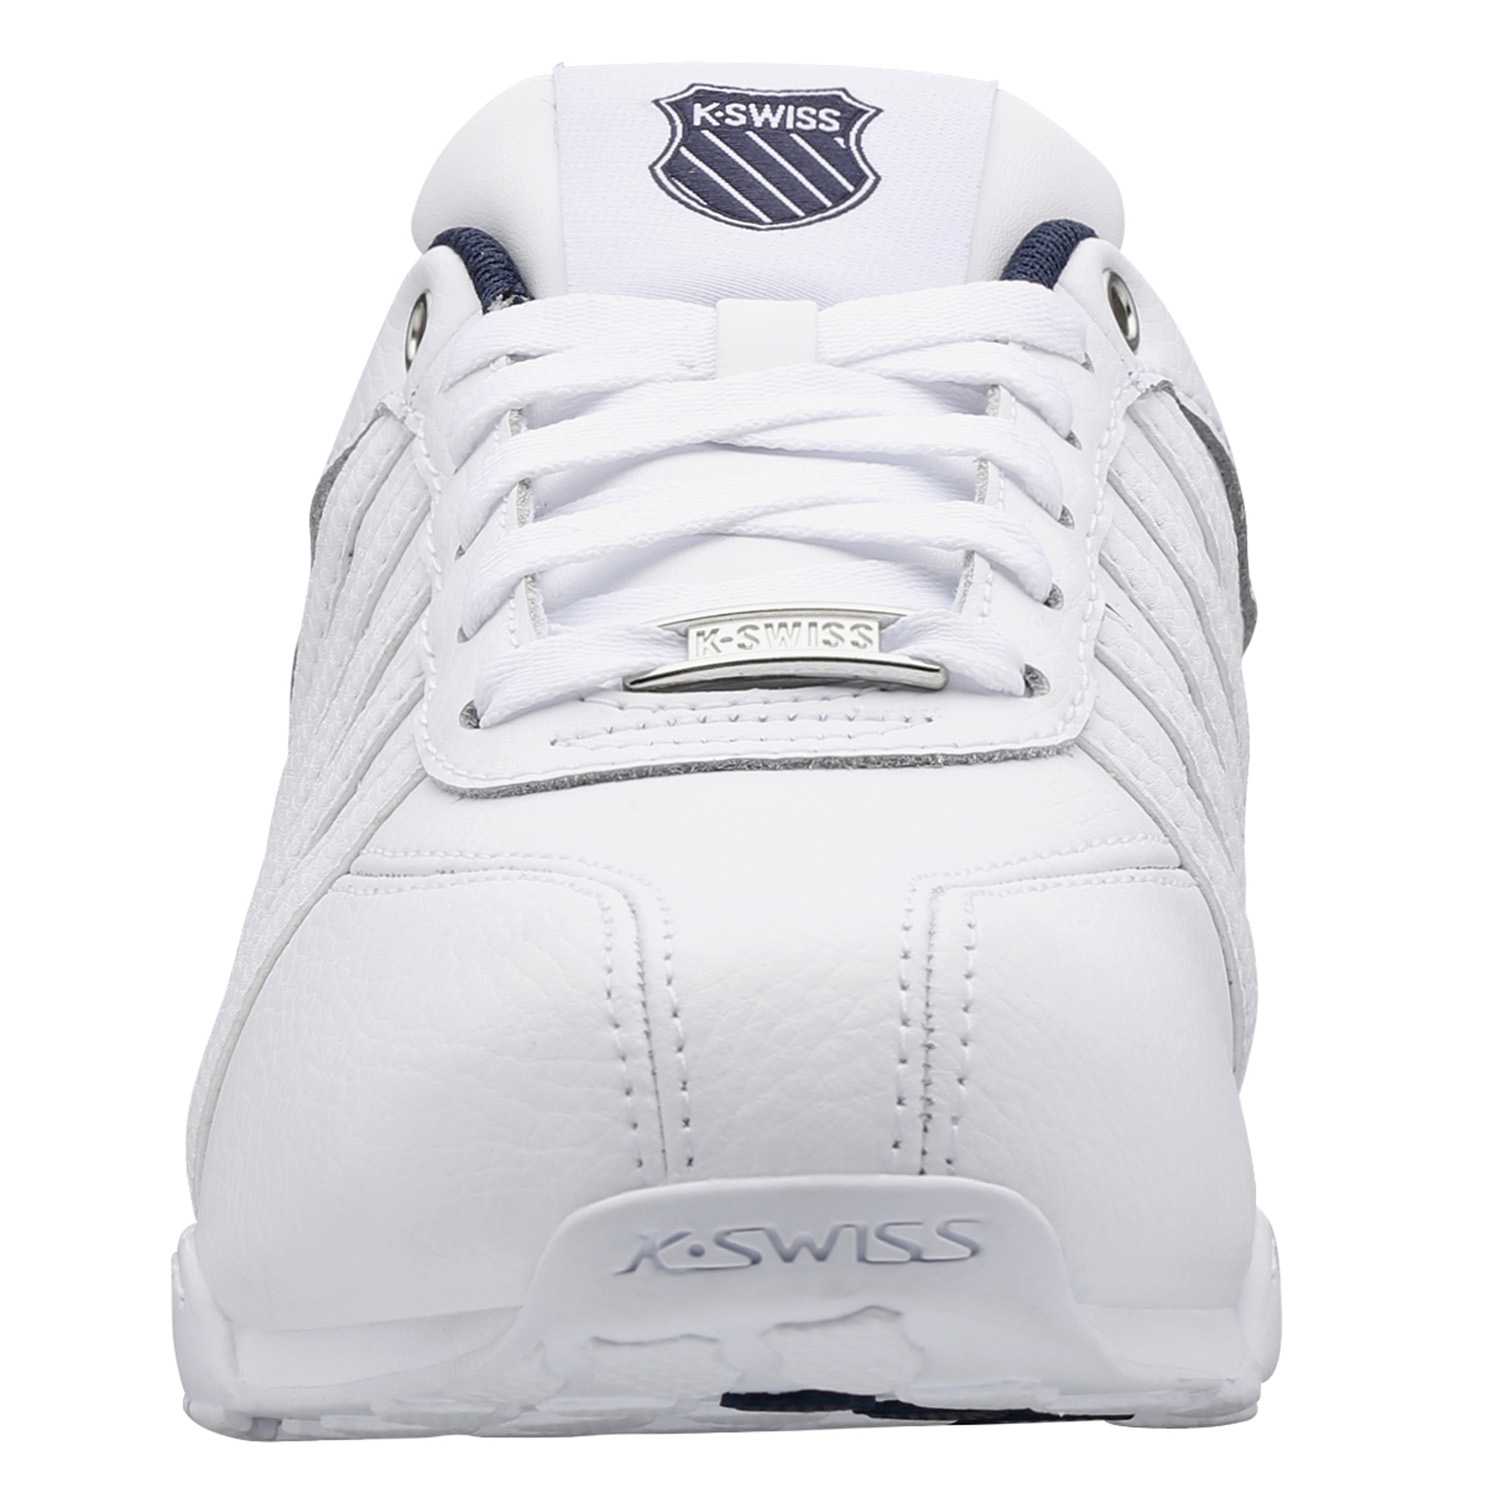 K-SWISS Arvee 1.5 Herren Sneaker Sportschuhe 02453-909-M Weiß/Blau